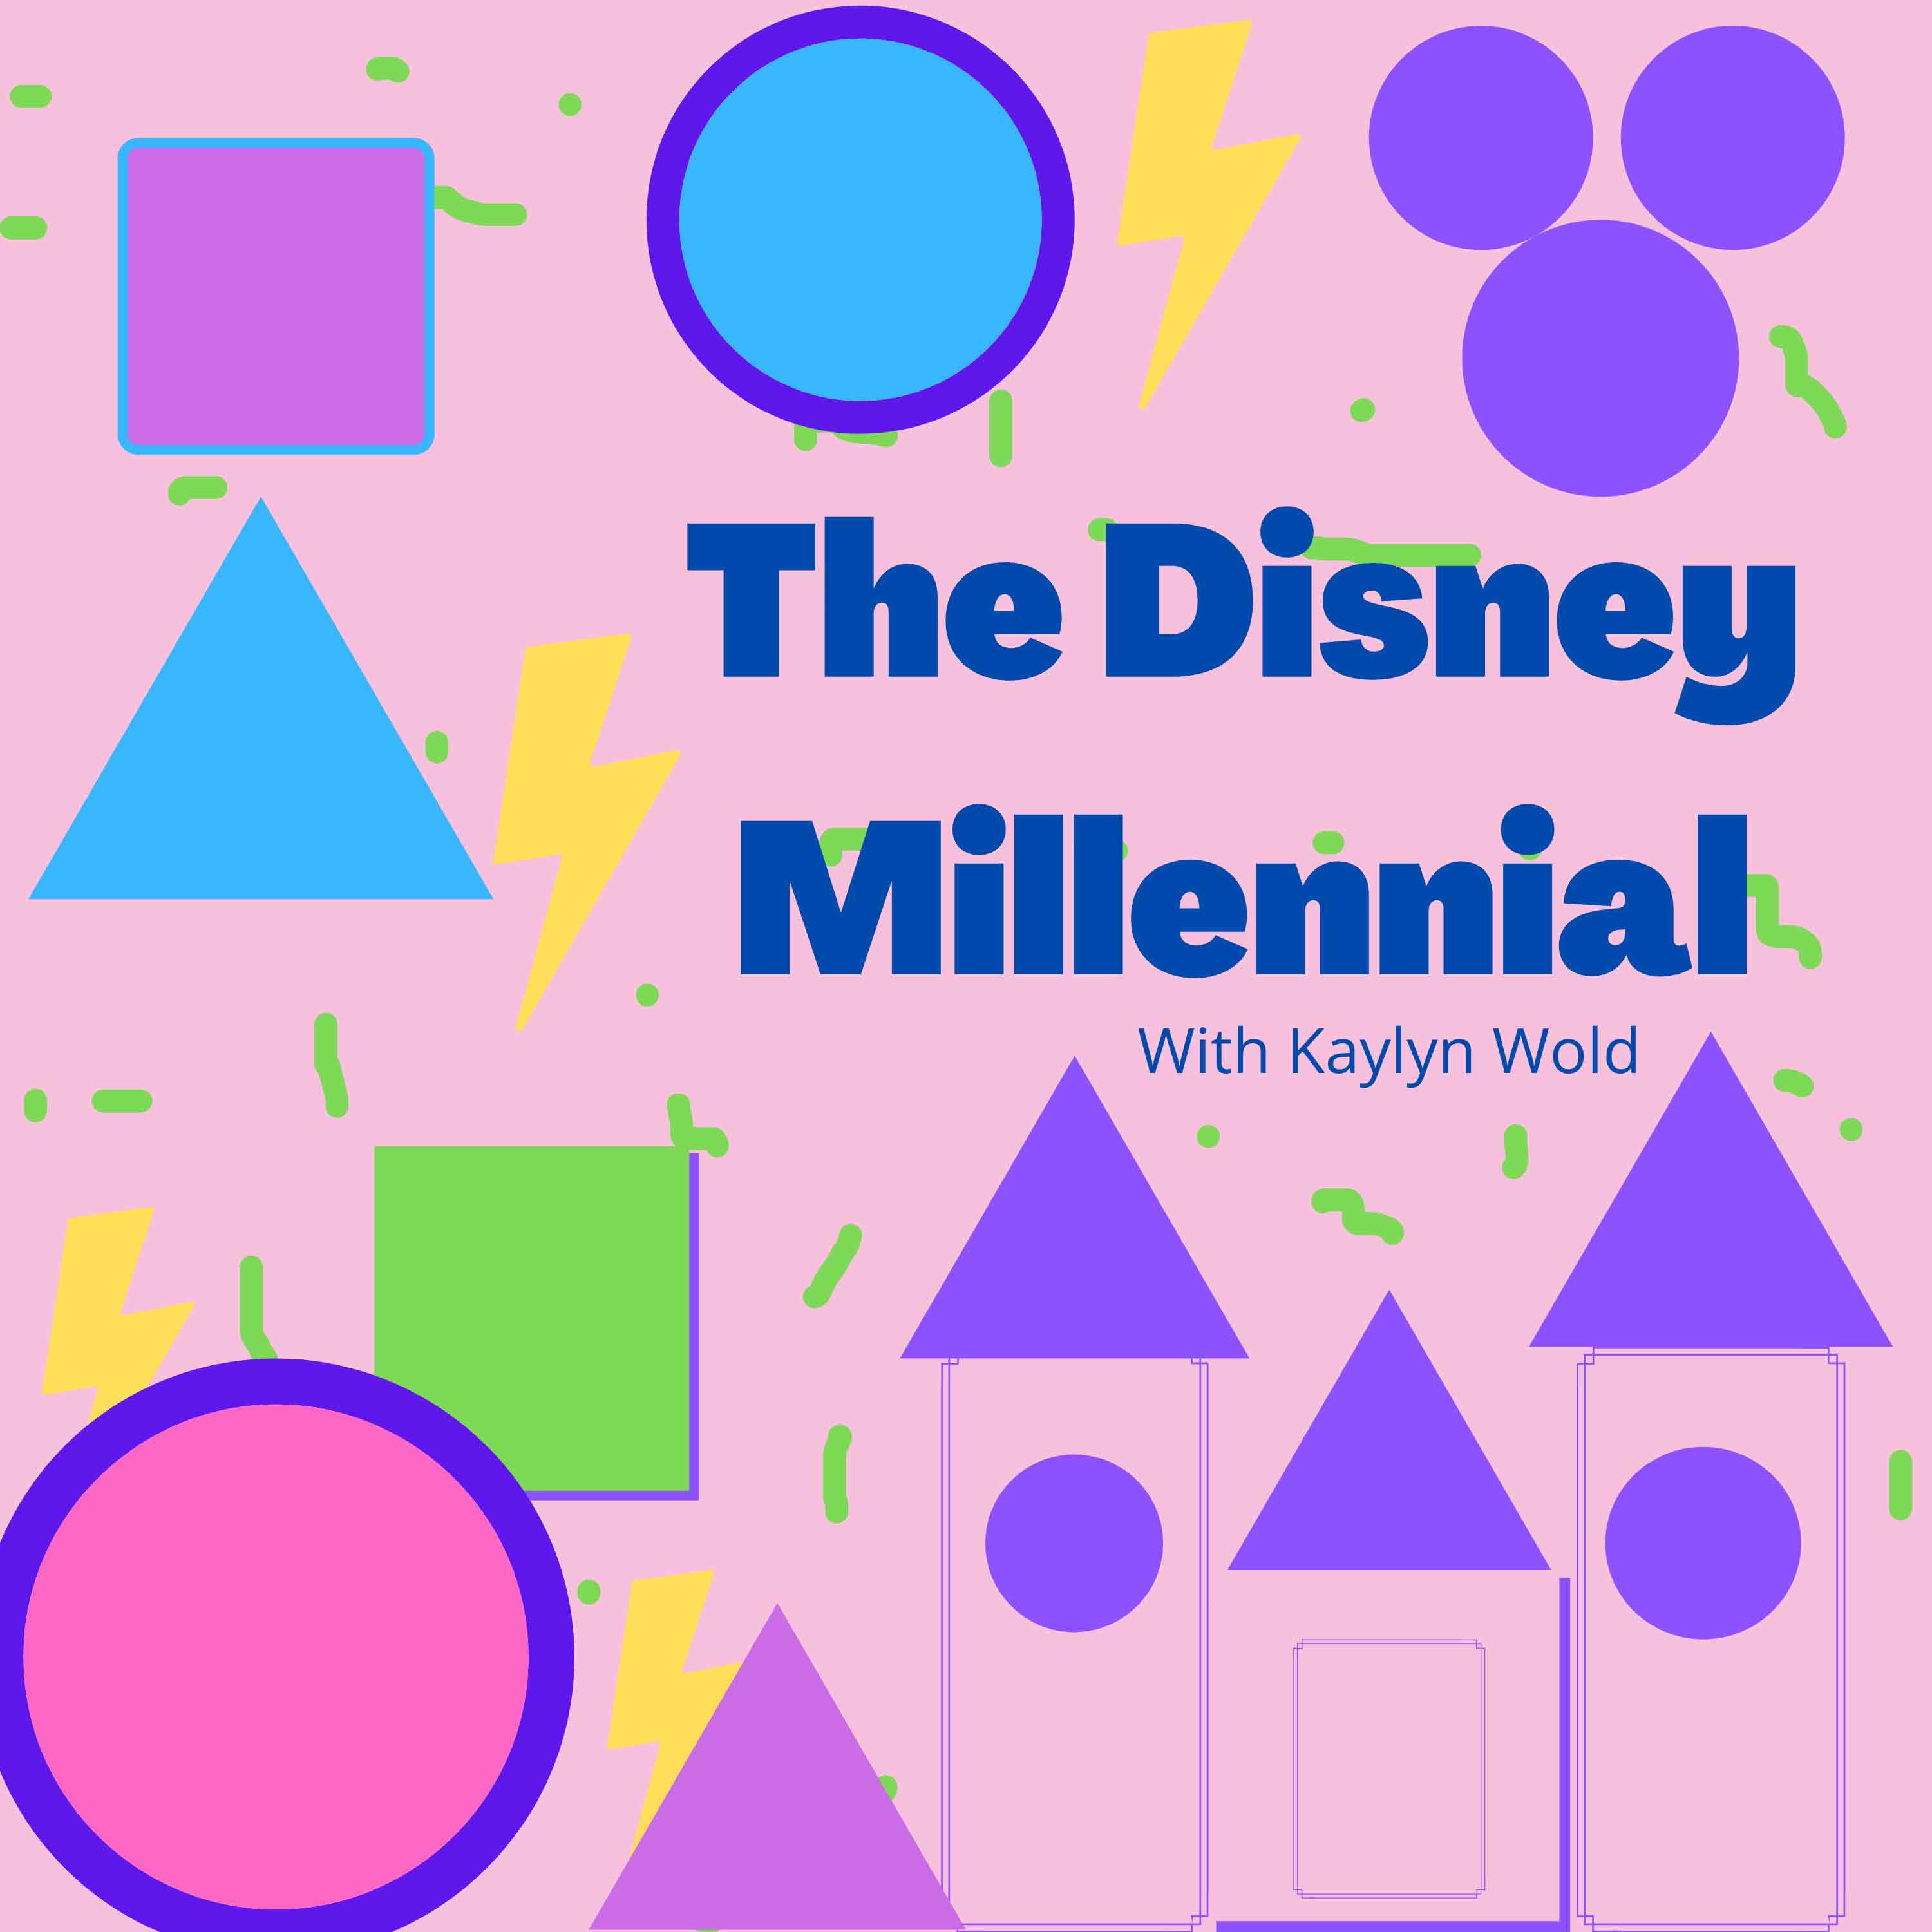 The Disney Millennial